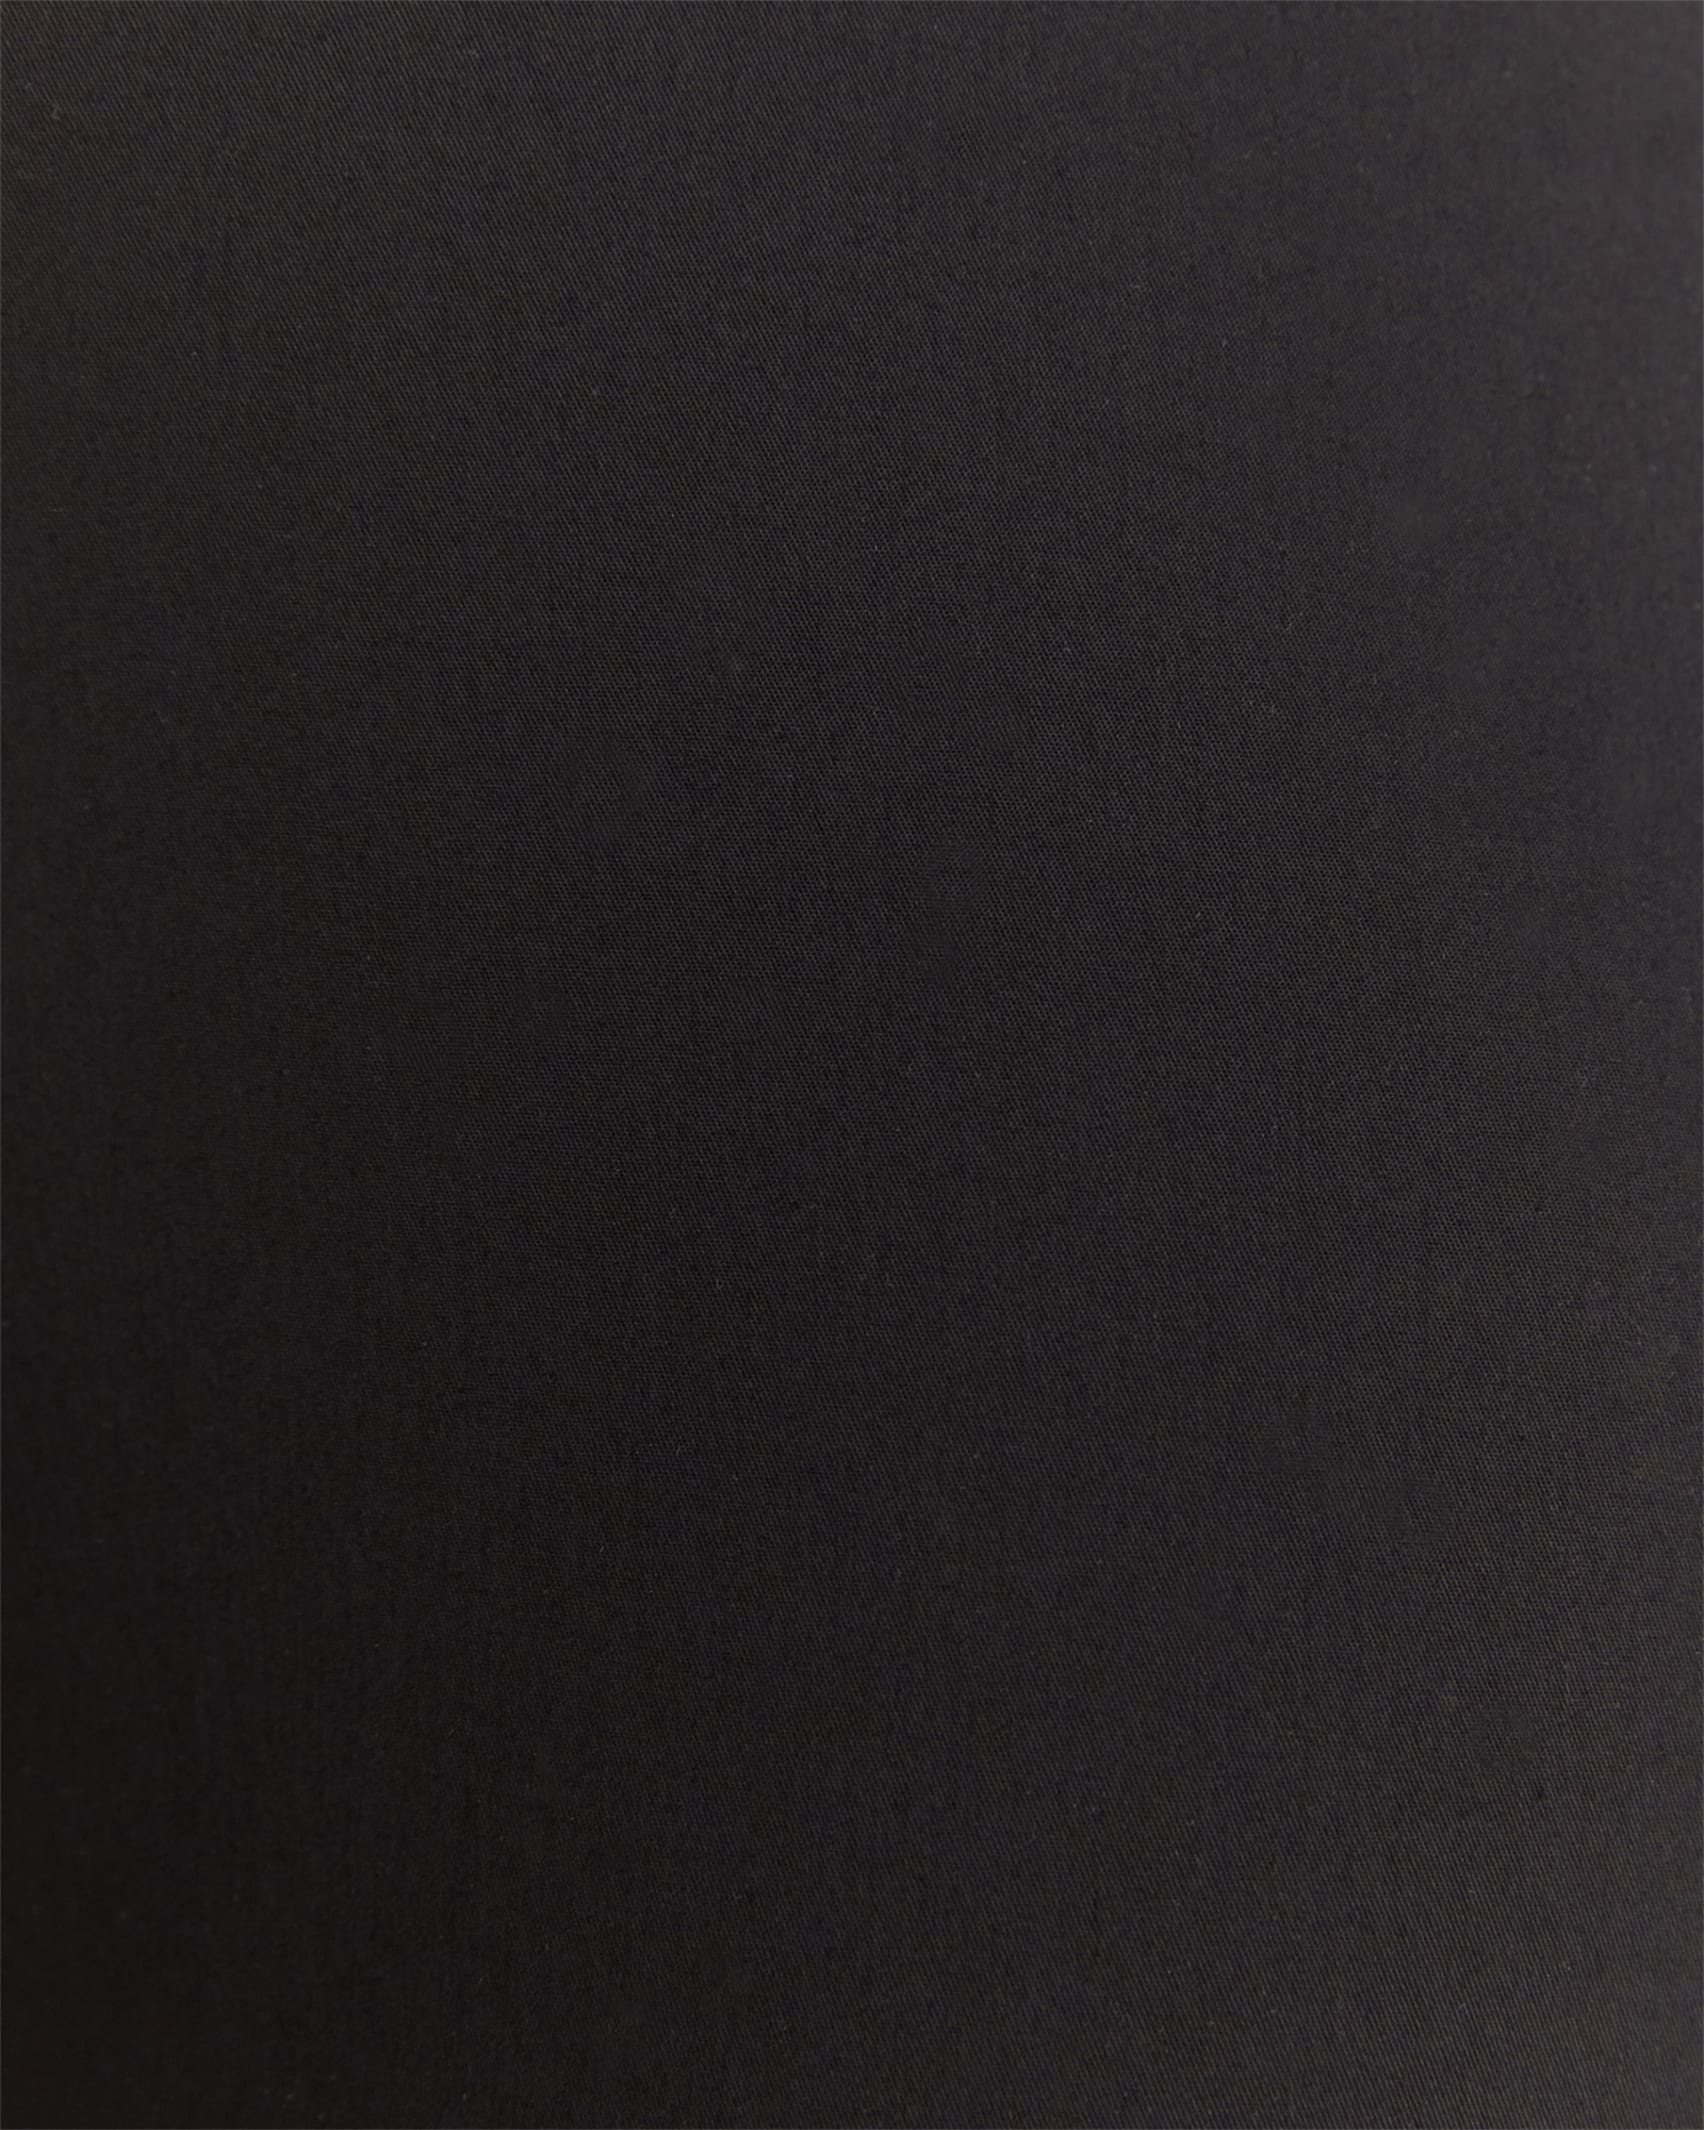 Evie Capri in BLACK